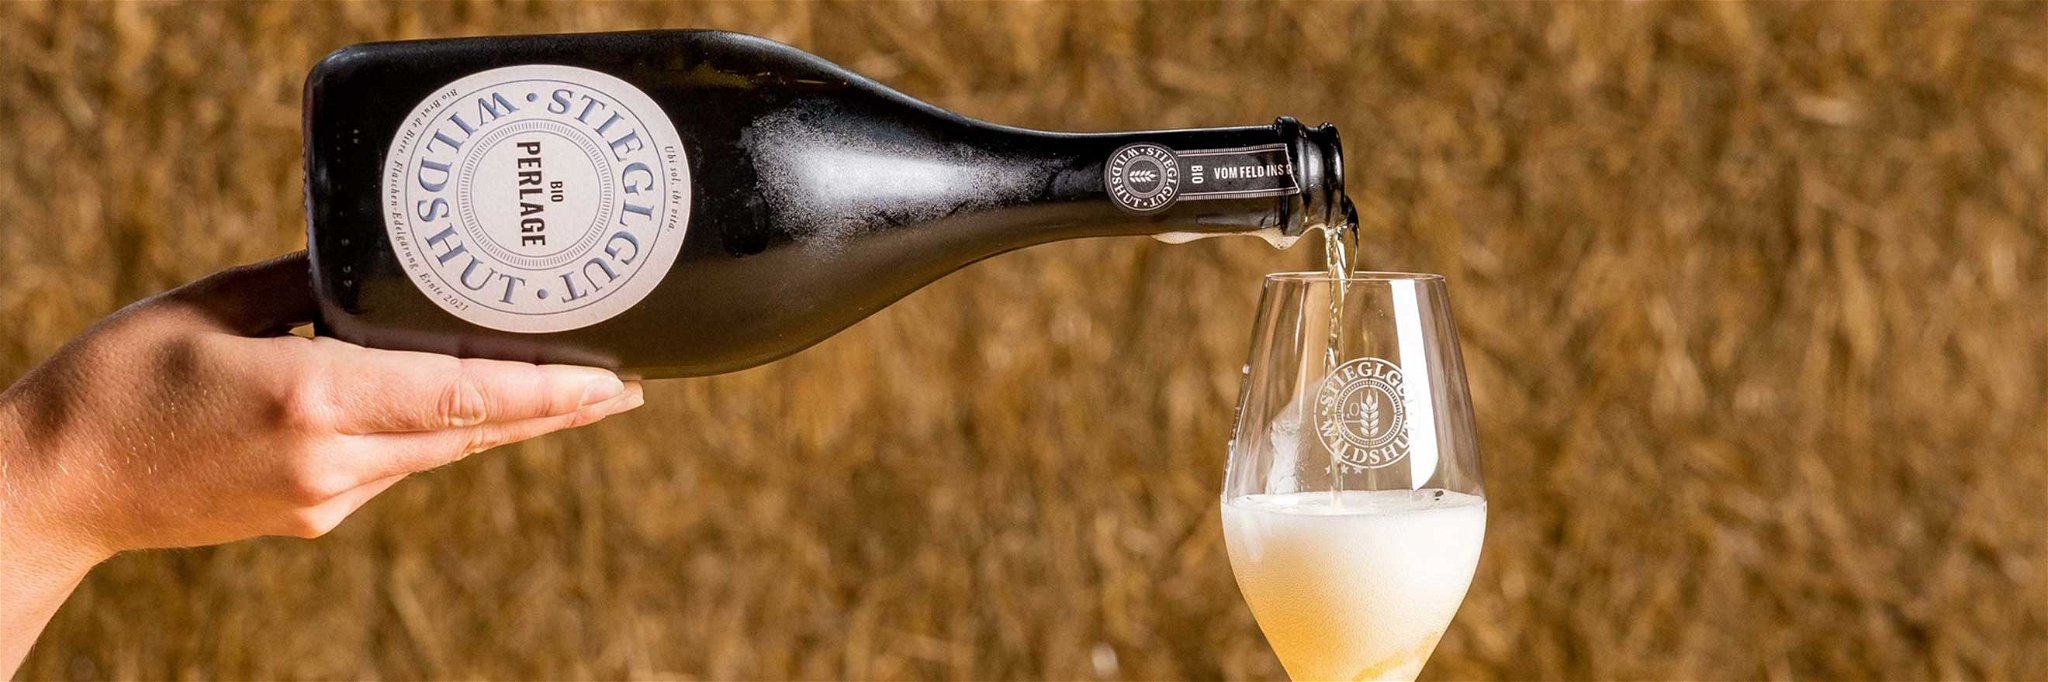 Die Flaschengärung nach der Champagnermethode sorgt bei der neuesten Bierkreation für prickelnden Genuss.